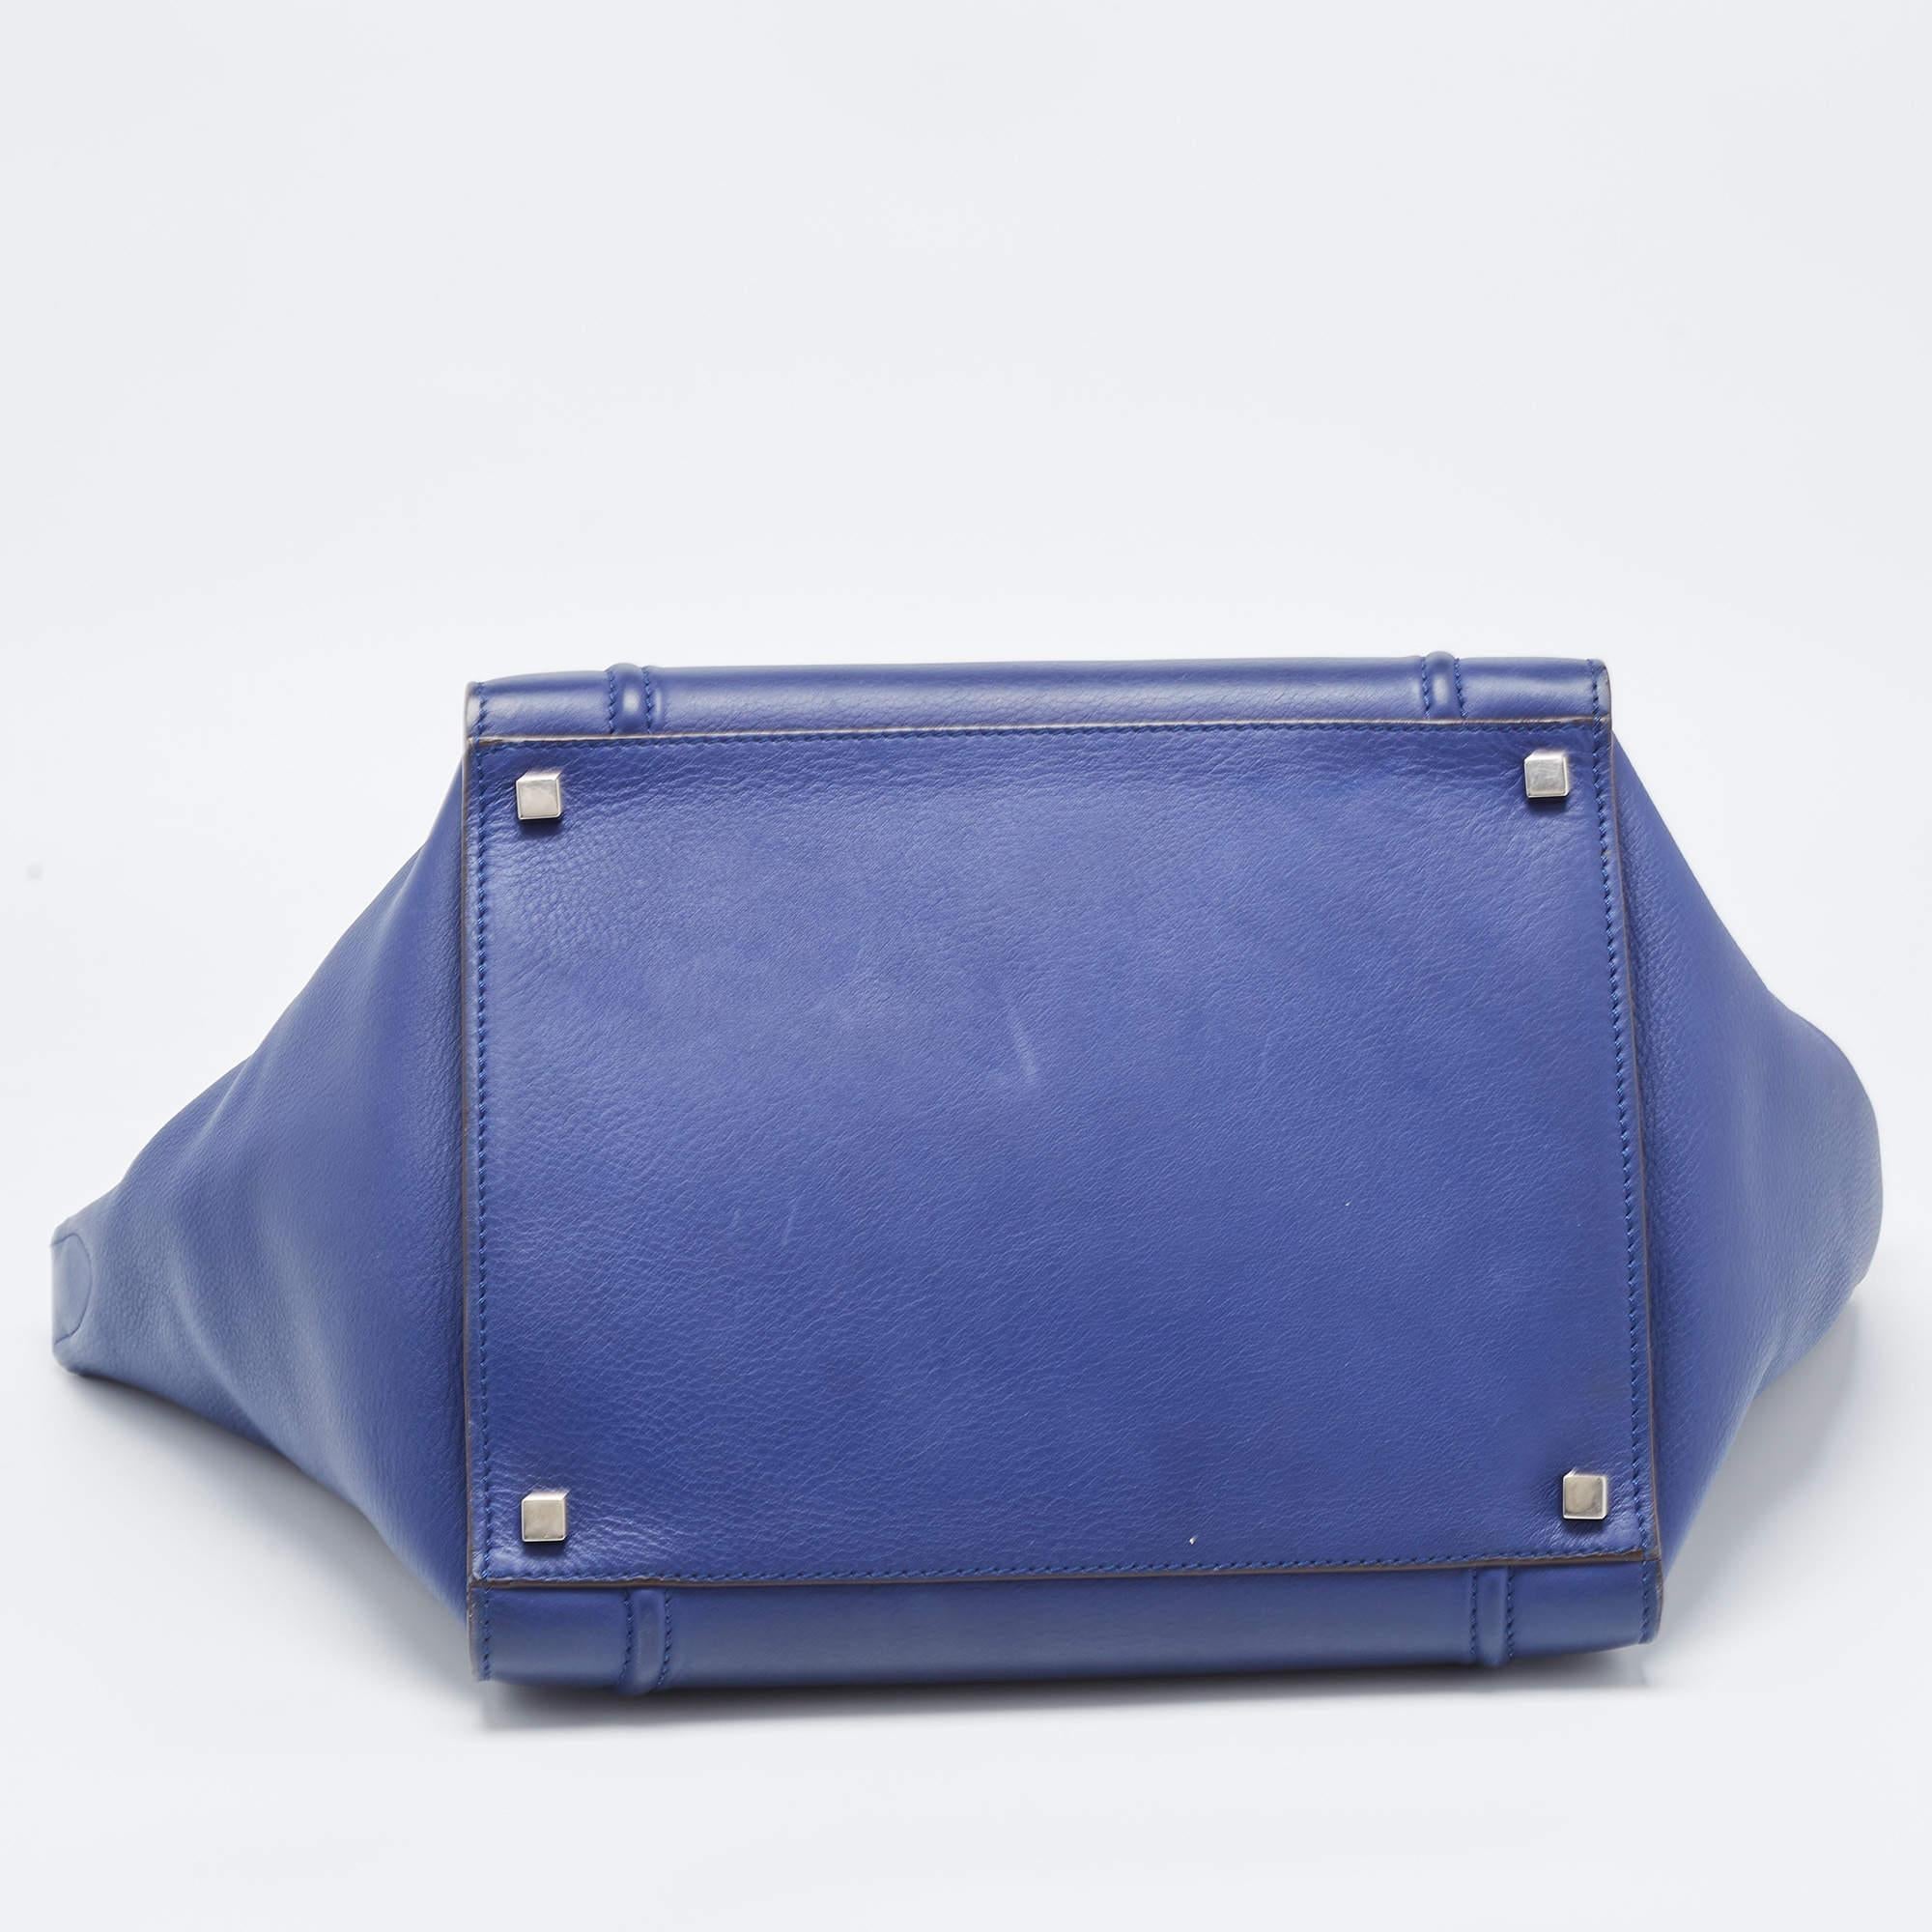 Celine Blue Leather Medium Phantom Luggage Tote 9